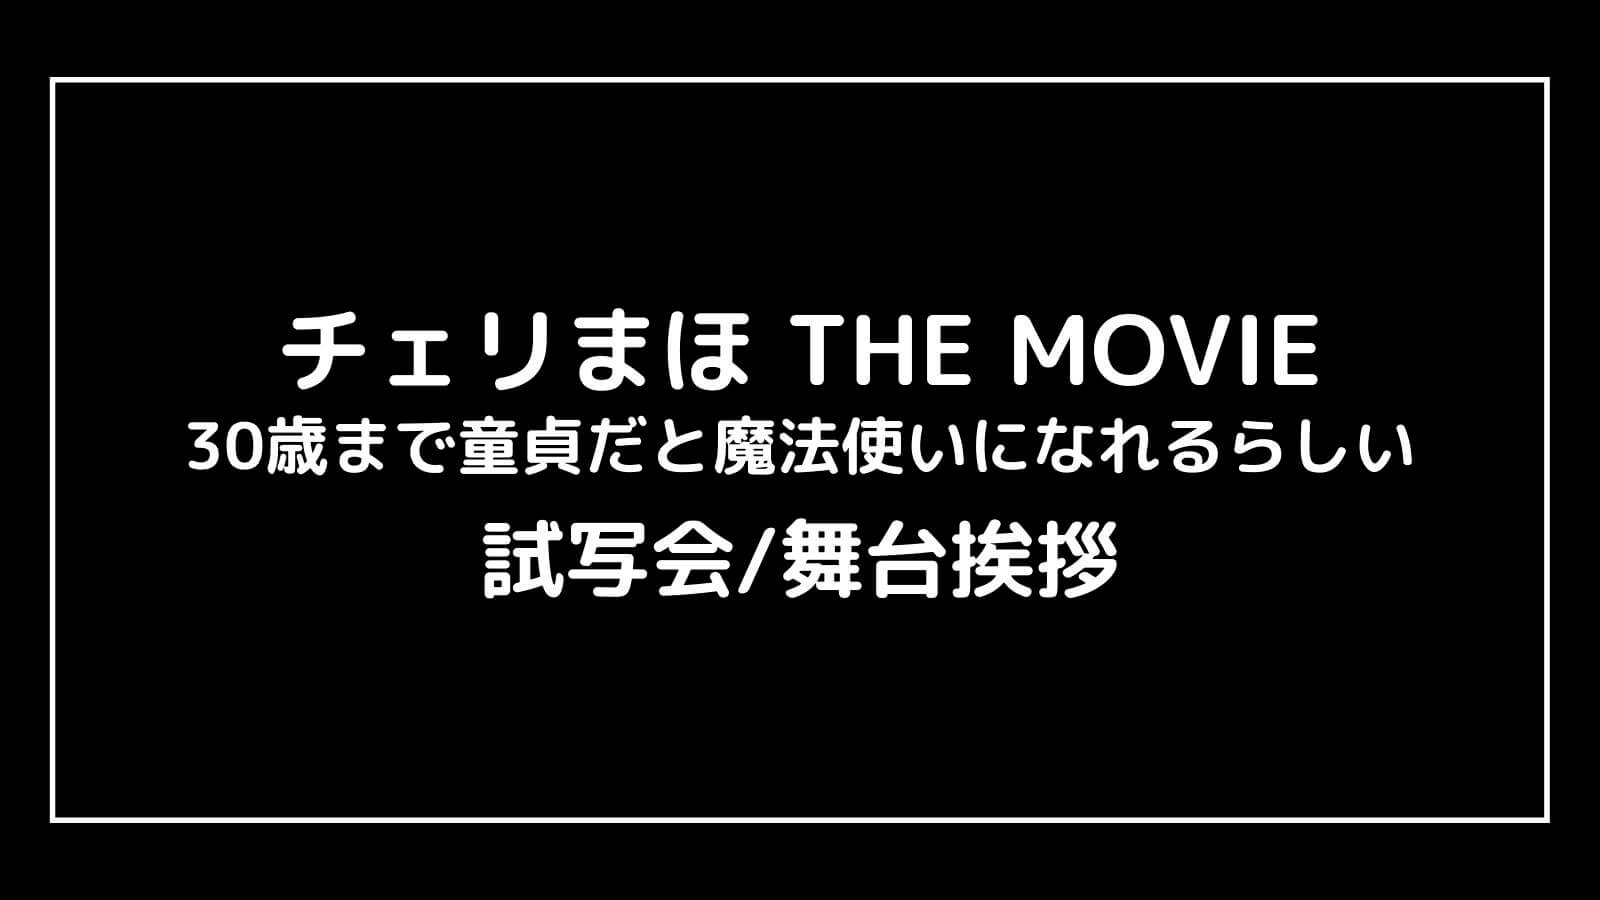 映画『チェリまほ THE MOVIE』の試写会と舞台挨拶ライブビューイング情報